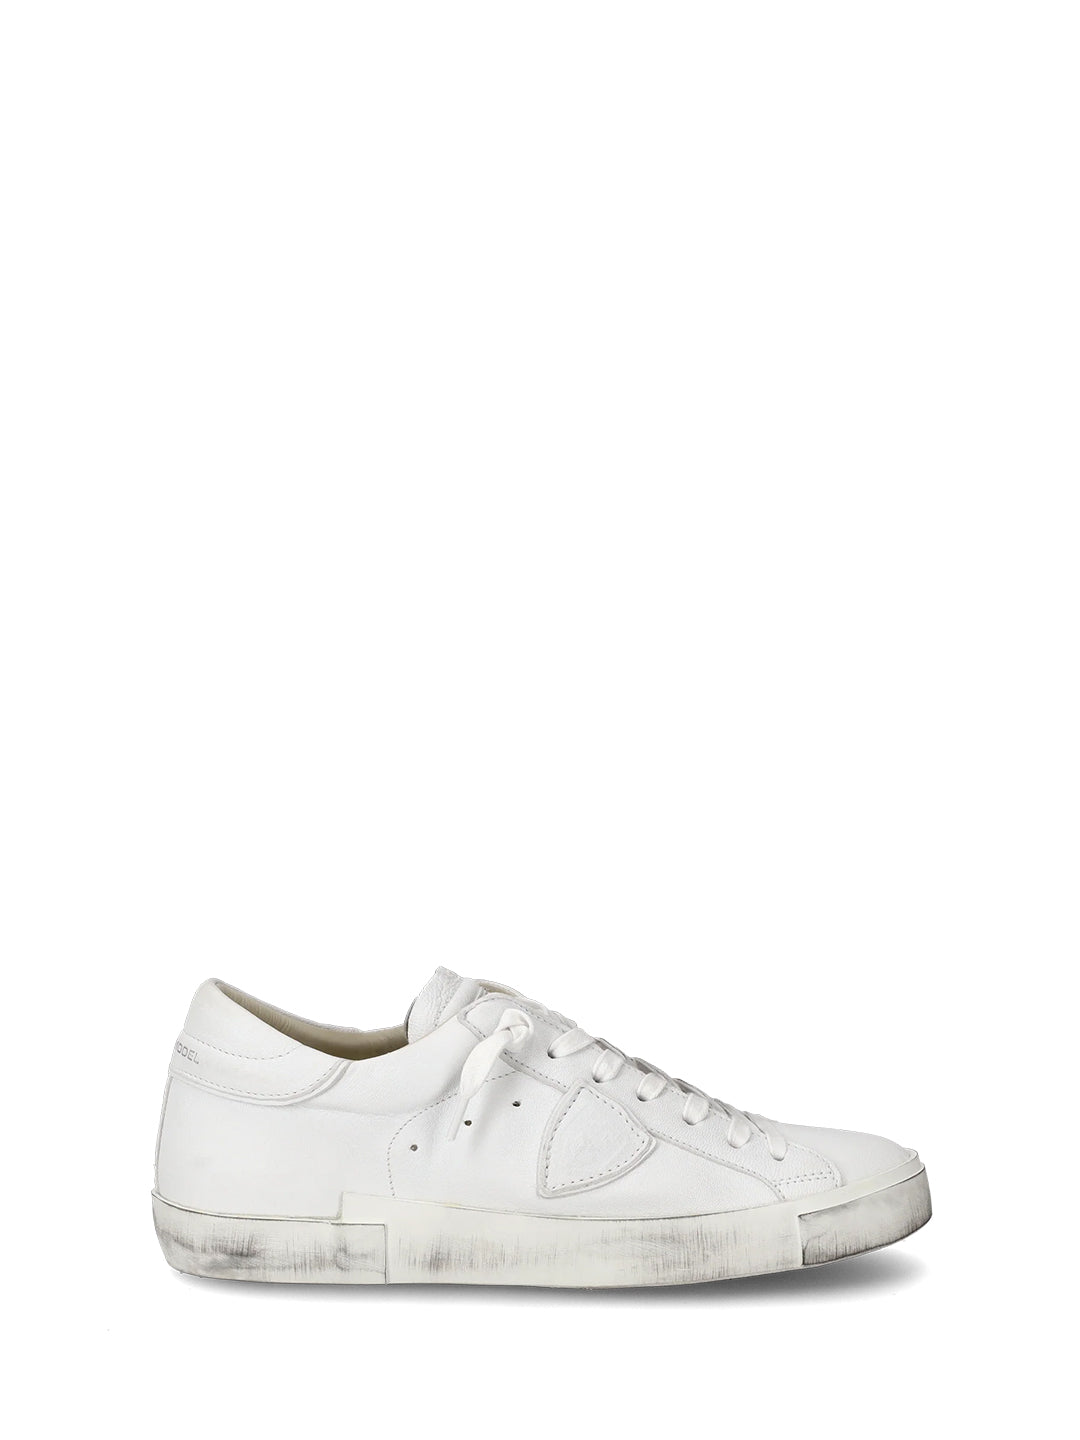 Philippe Model Prsx sneakers bianco con effetto vissuto